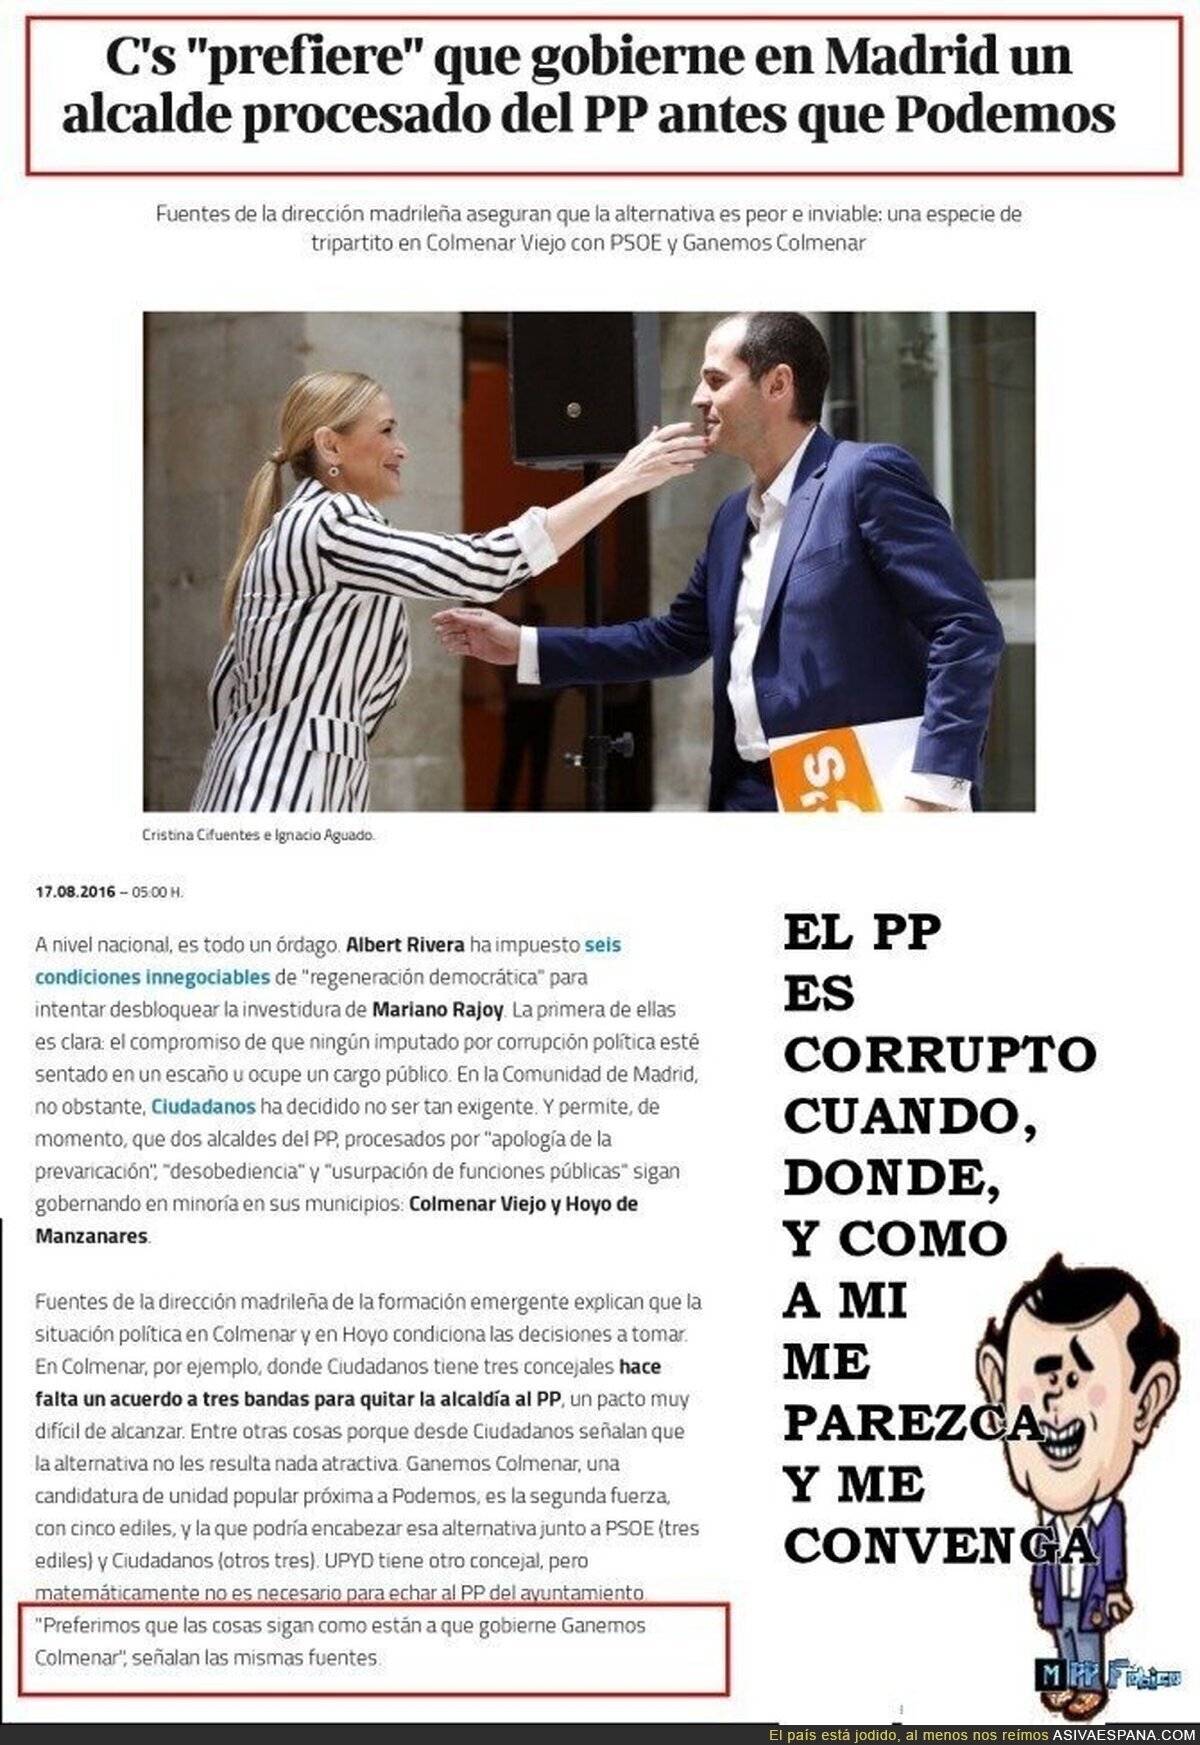 C's "prefiere" que gobierne en Madrid un alcalde procesado del PP antes que Podemos